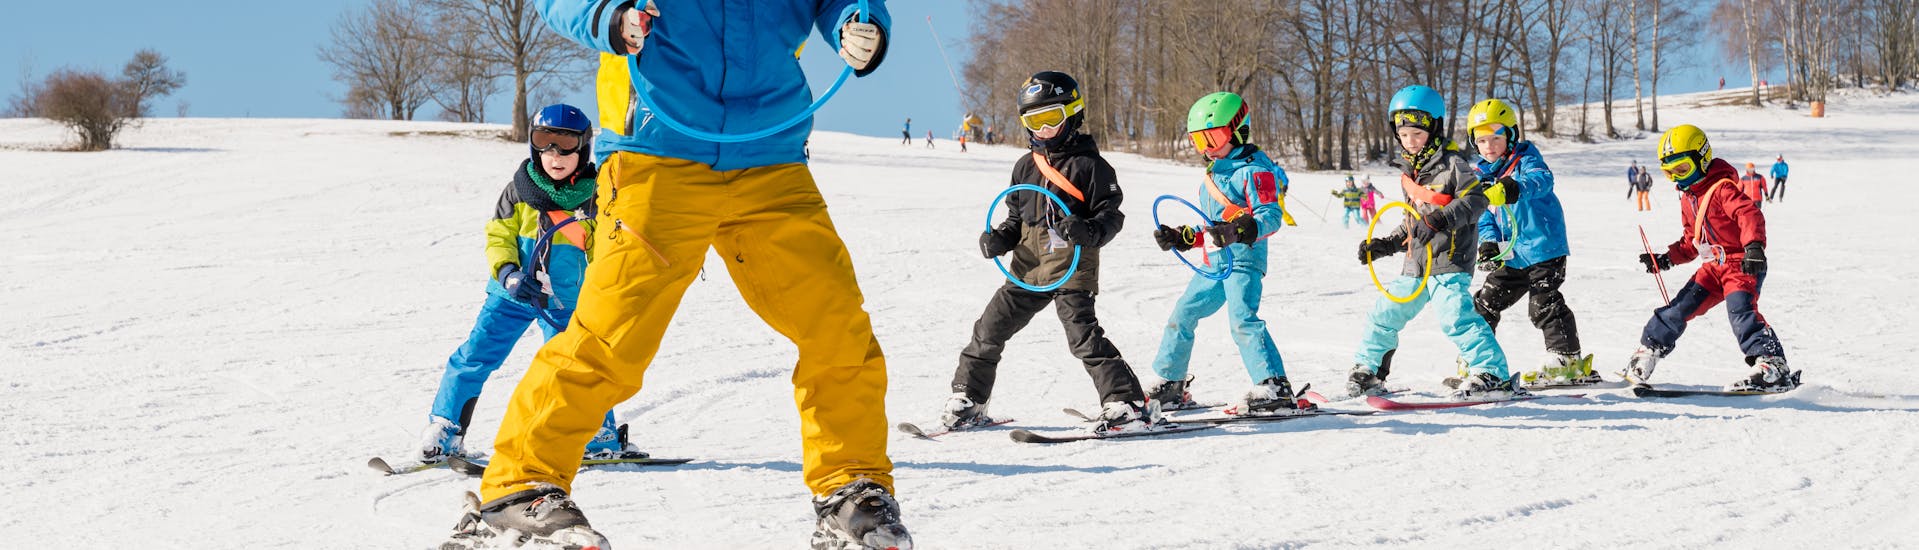 Lezioni di sci per bambini a partire da 5 anni per avanzati.